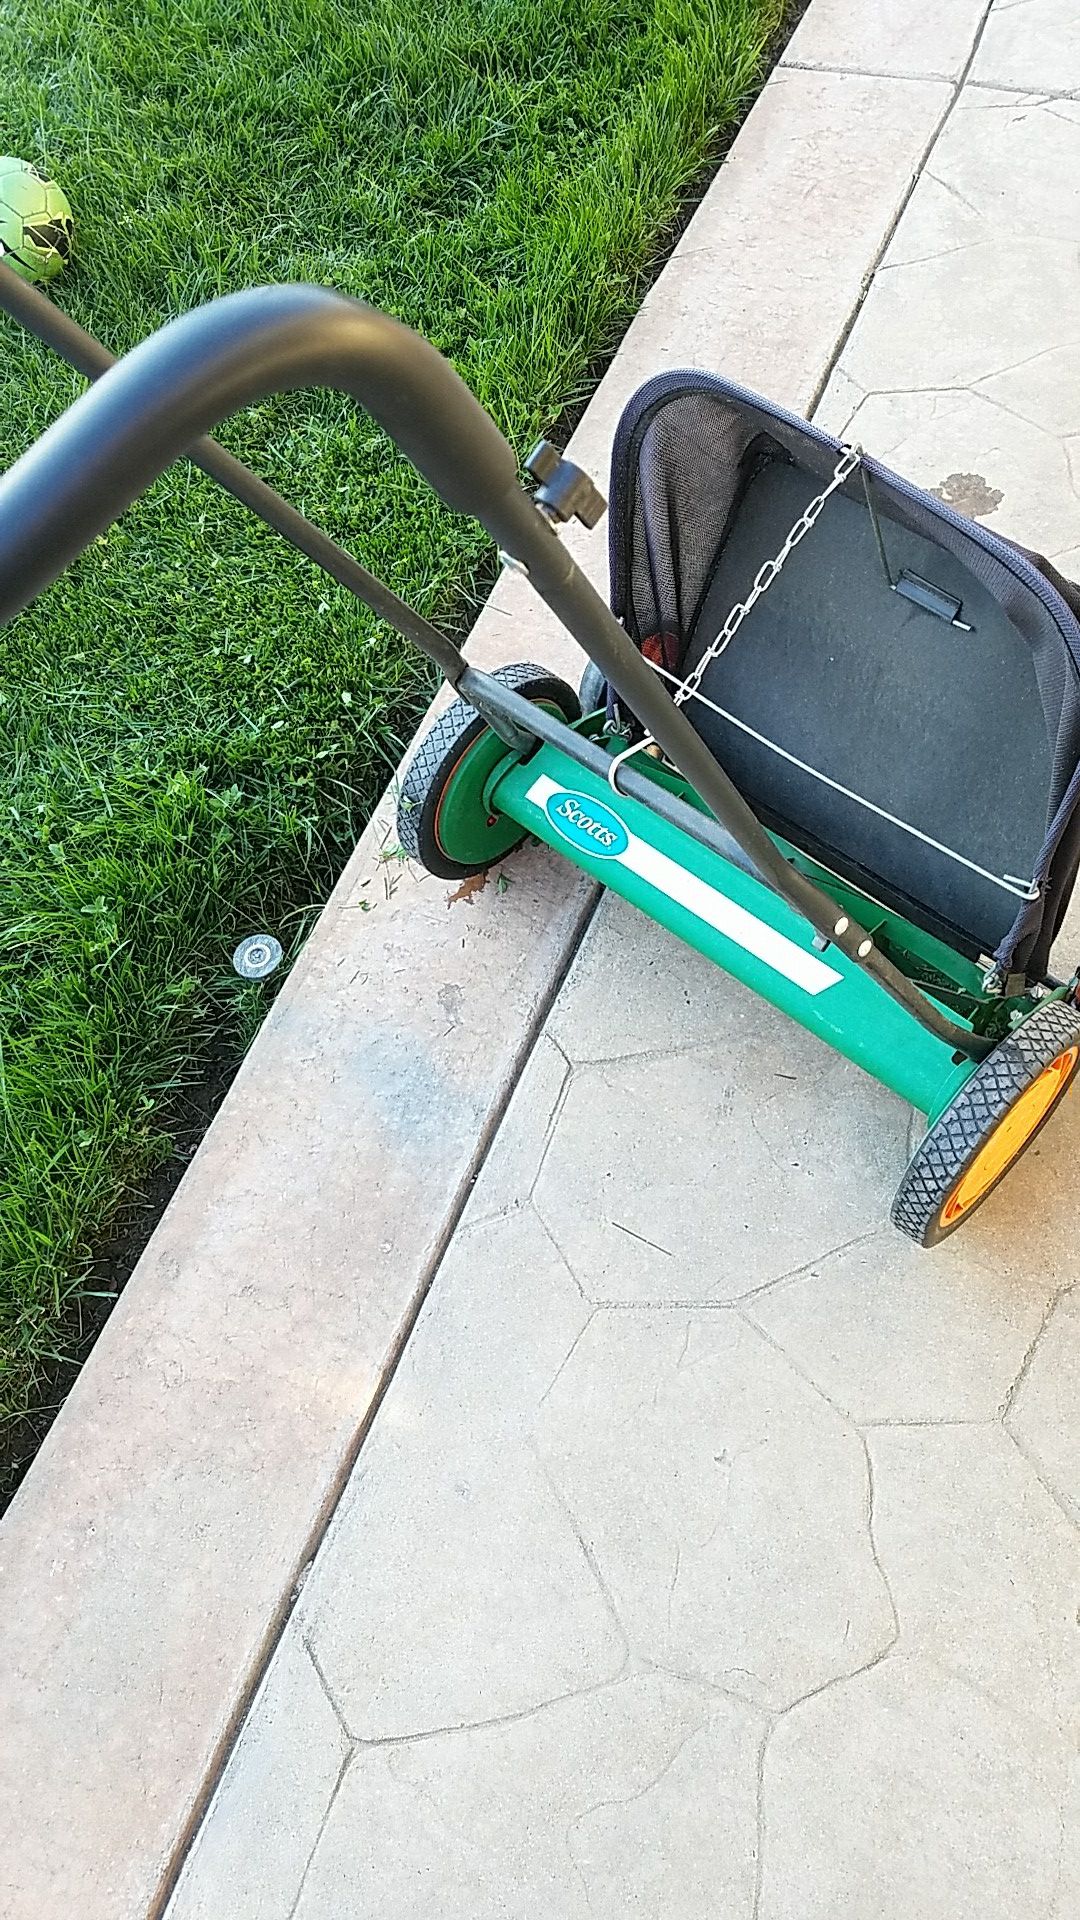 Scott's push lawnmower